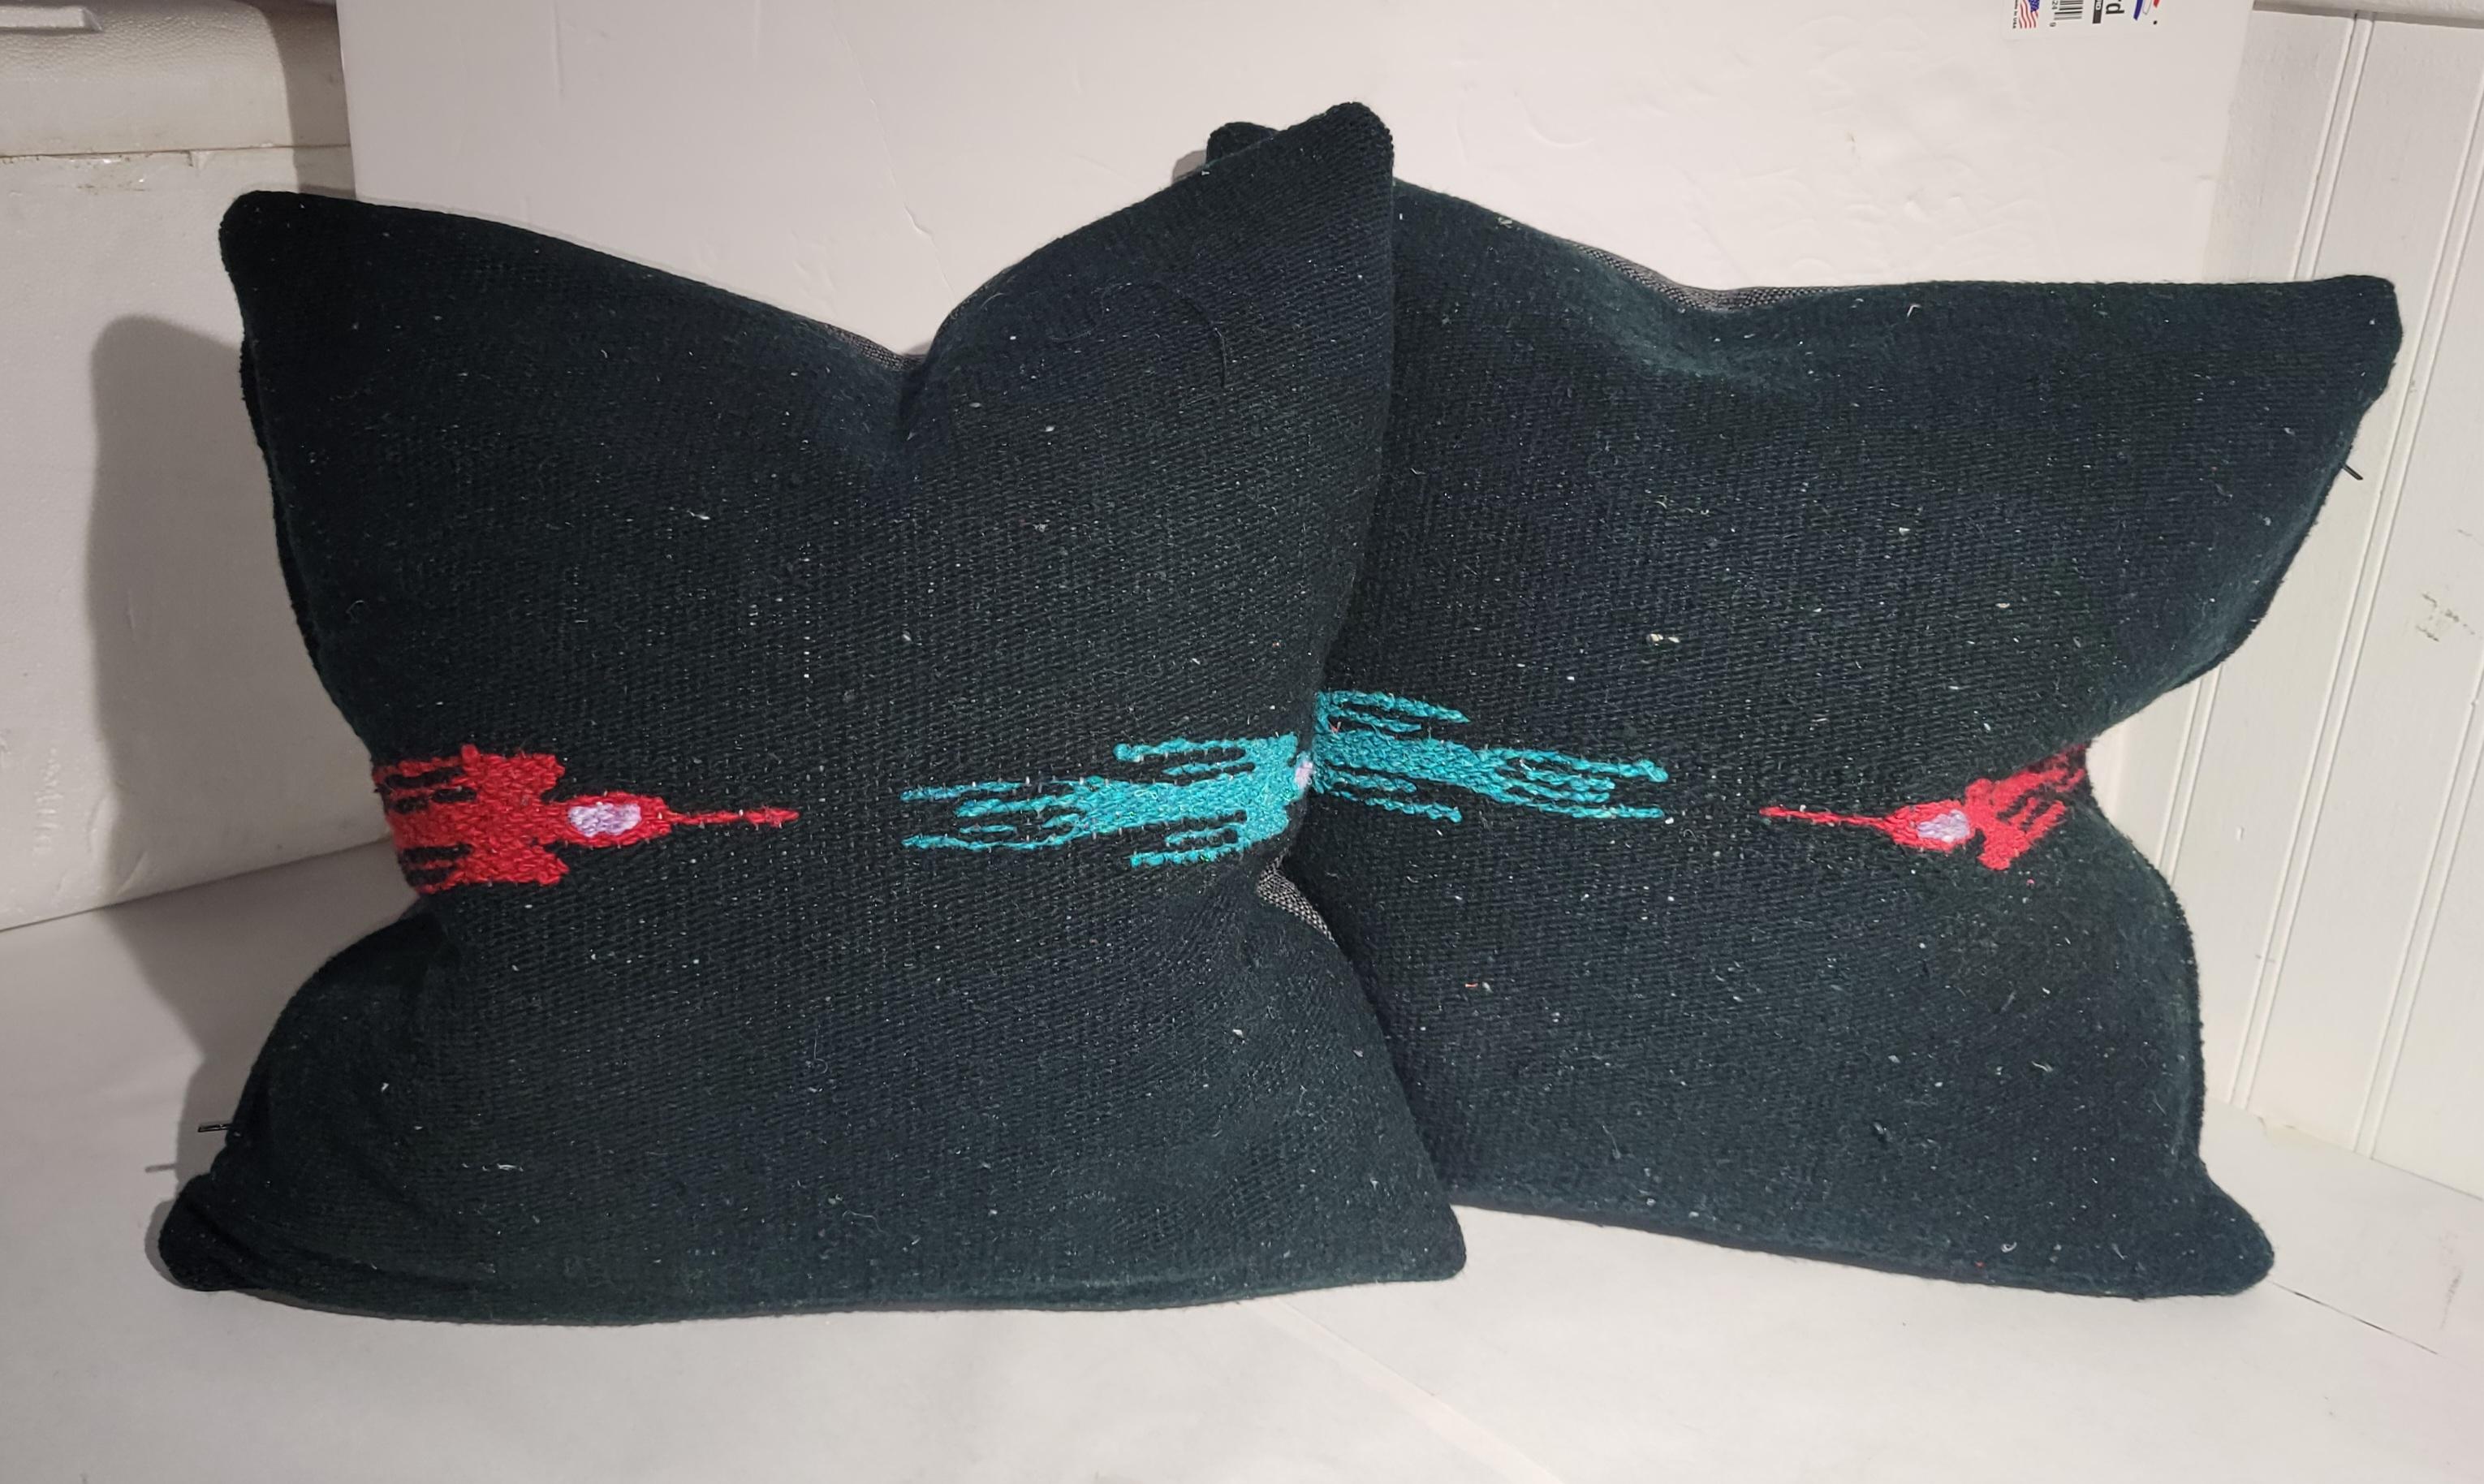 Paar handgefertigte Kissen mit Vögeln im Flug aus Wolle. Schwarzer Hintergrund mit blauen und roten Vögeln im Flug. Vintage-Stoffe als Kissen